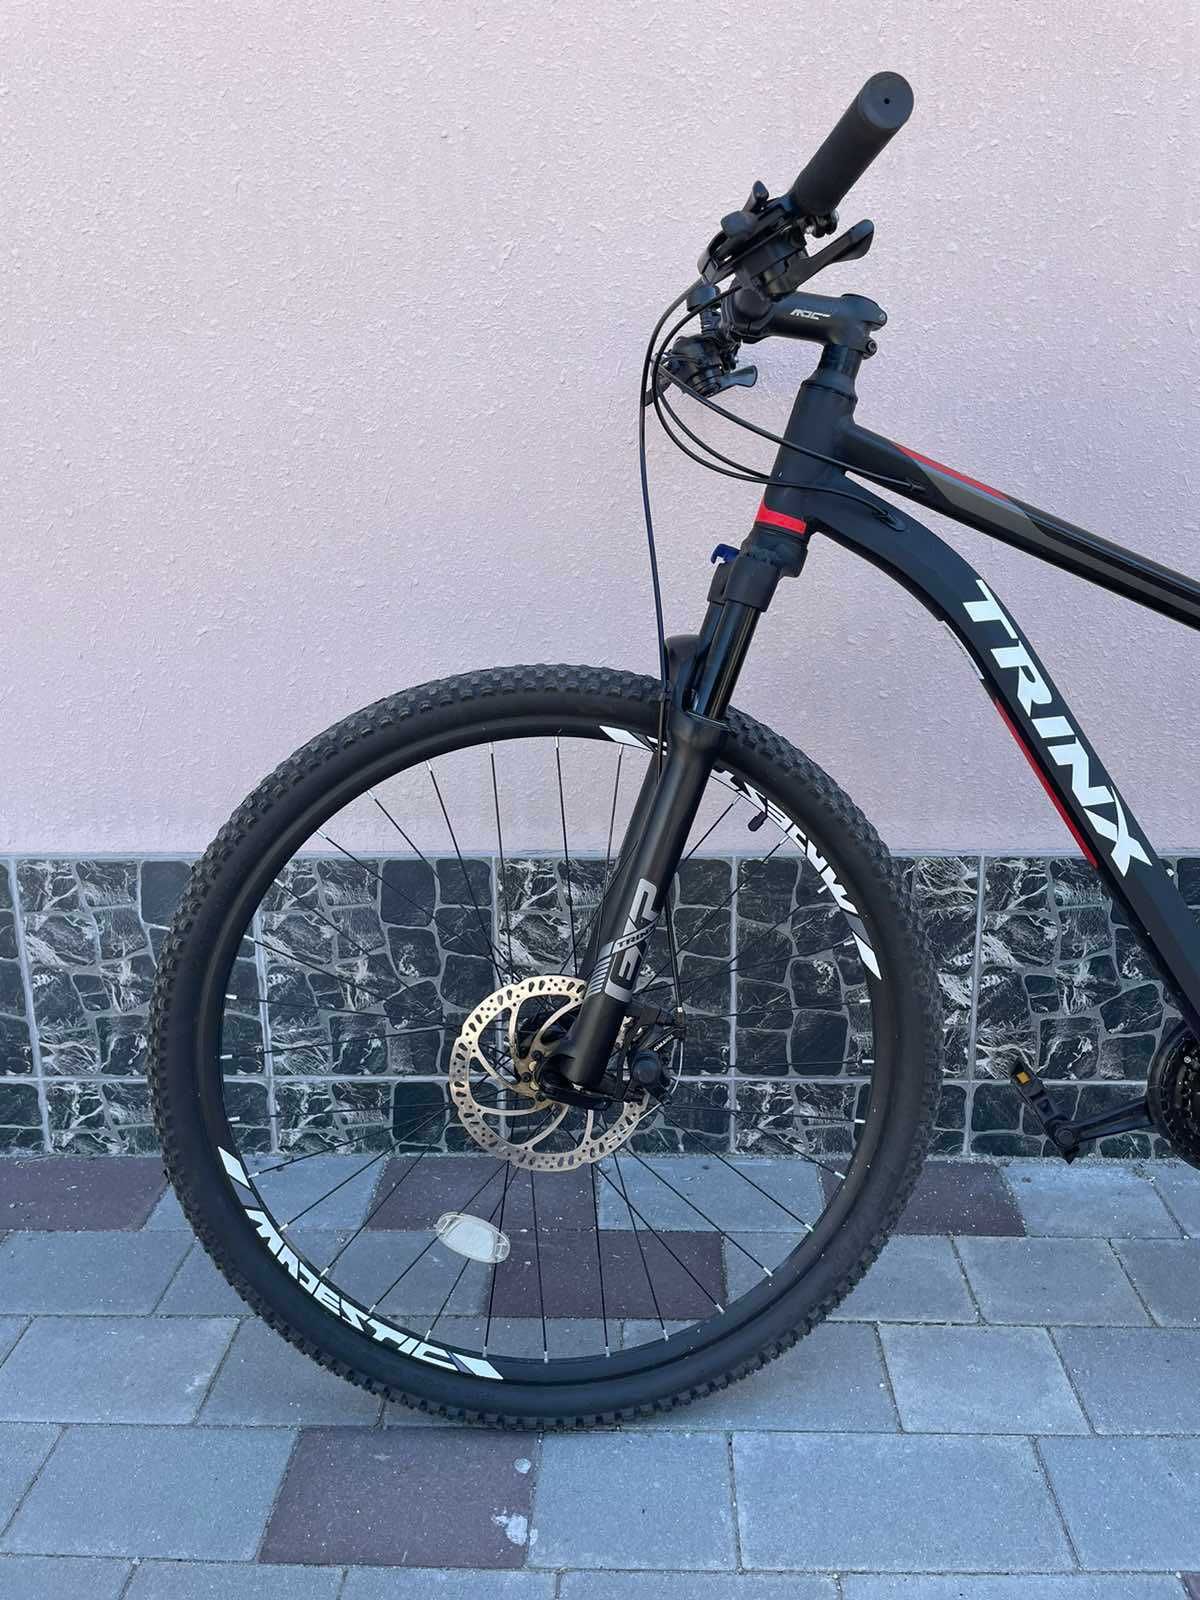 Велосипед Trinx M166 Pro (Black)